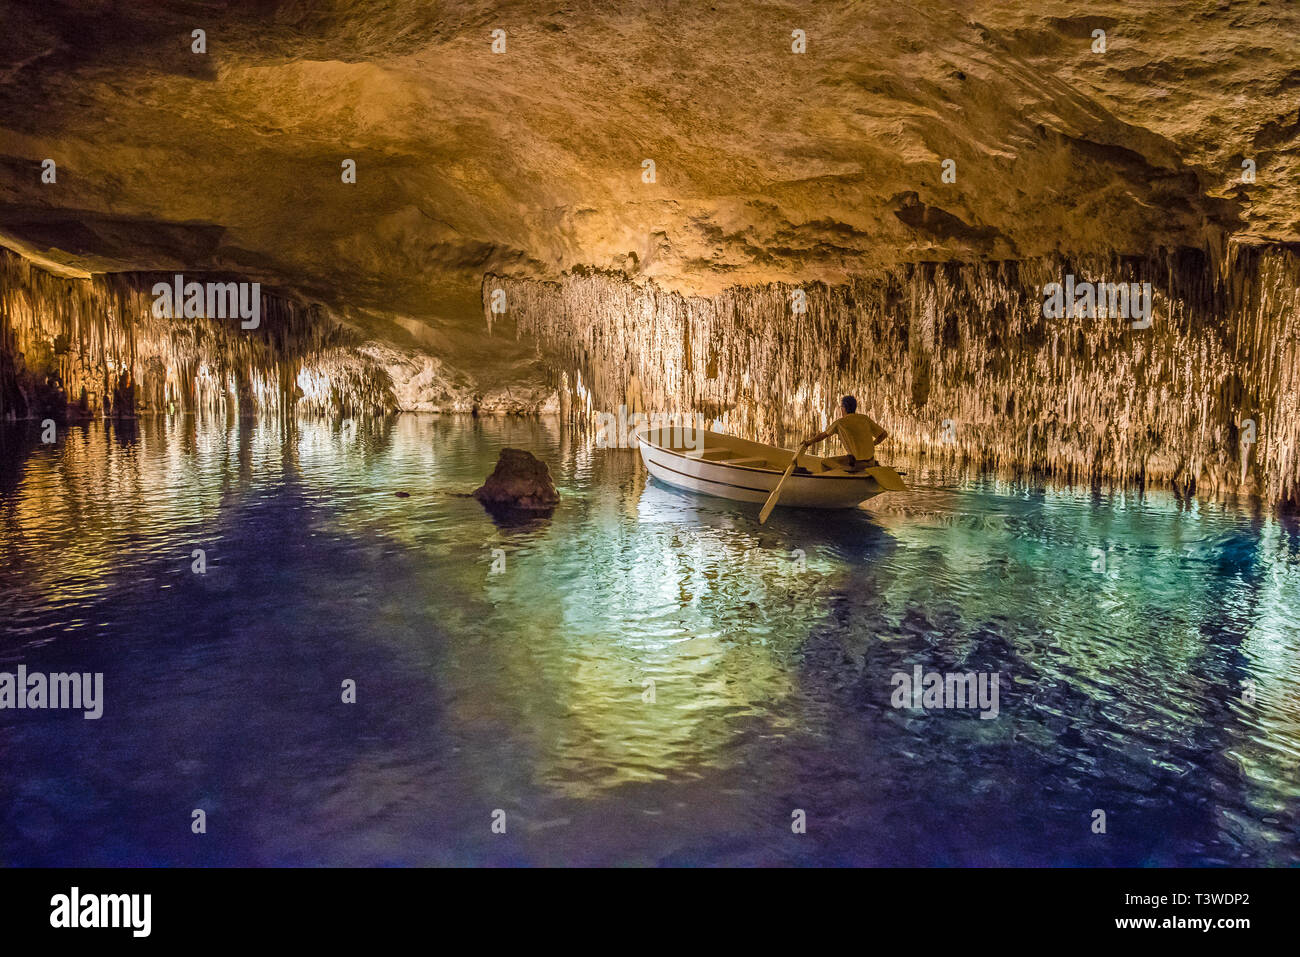 Cuevas del Drach sur l'île de Majorque, Espagne Banque D'Images